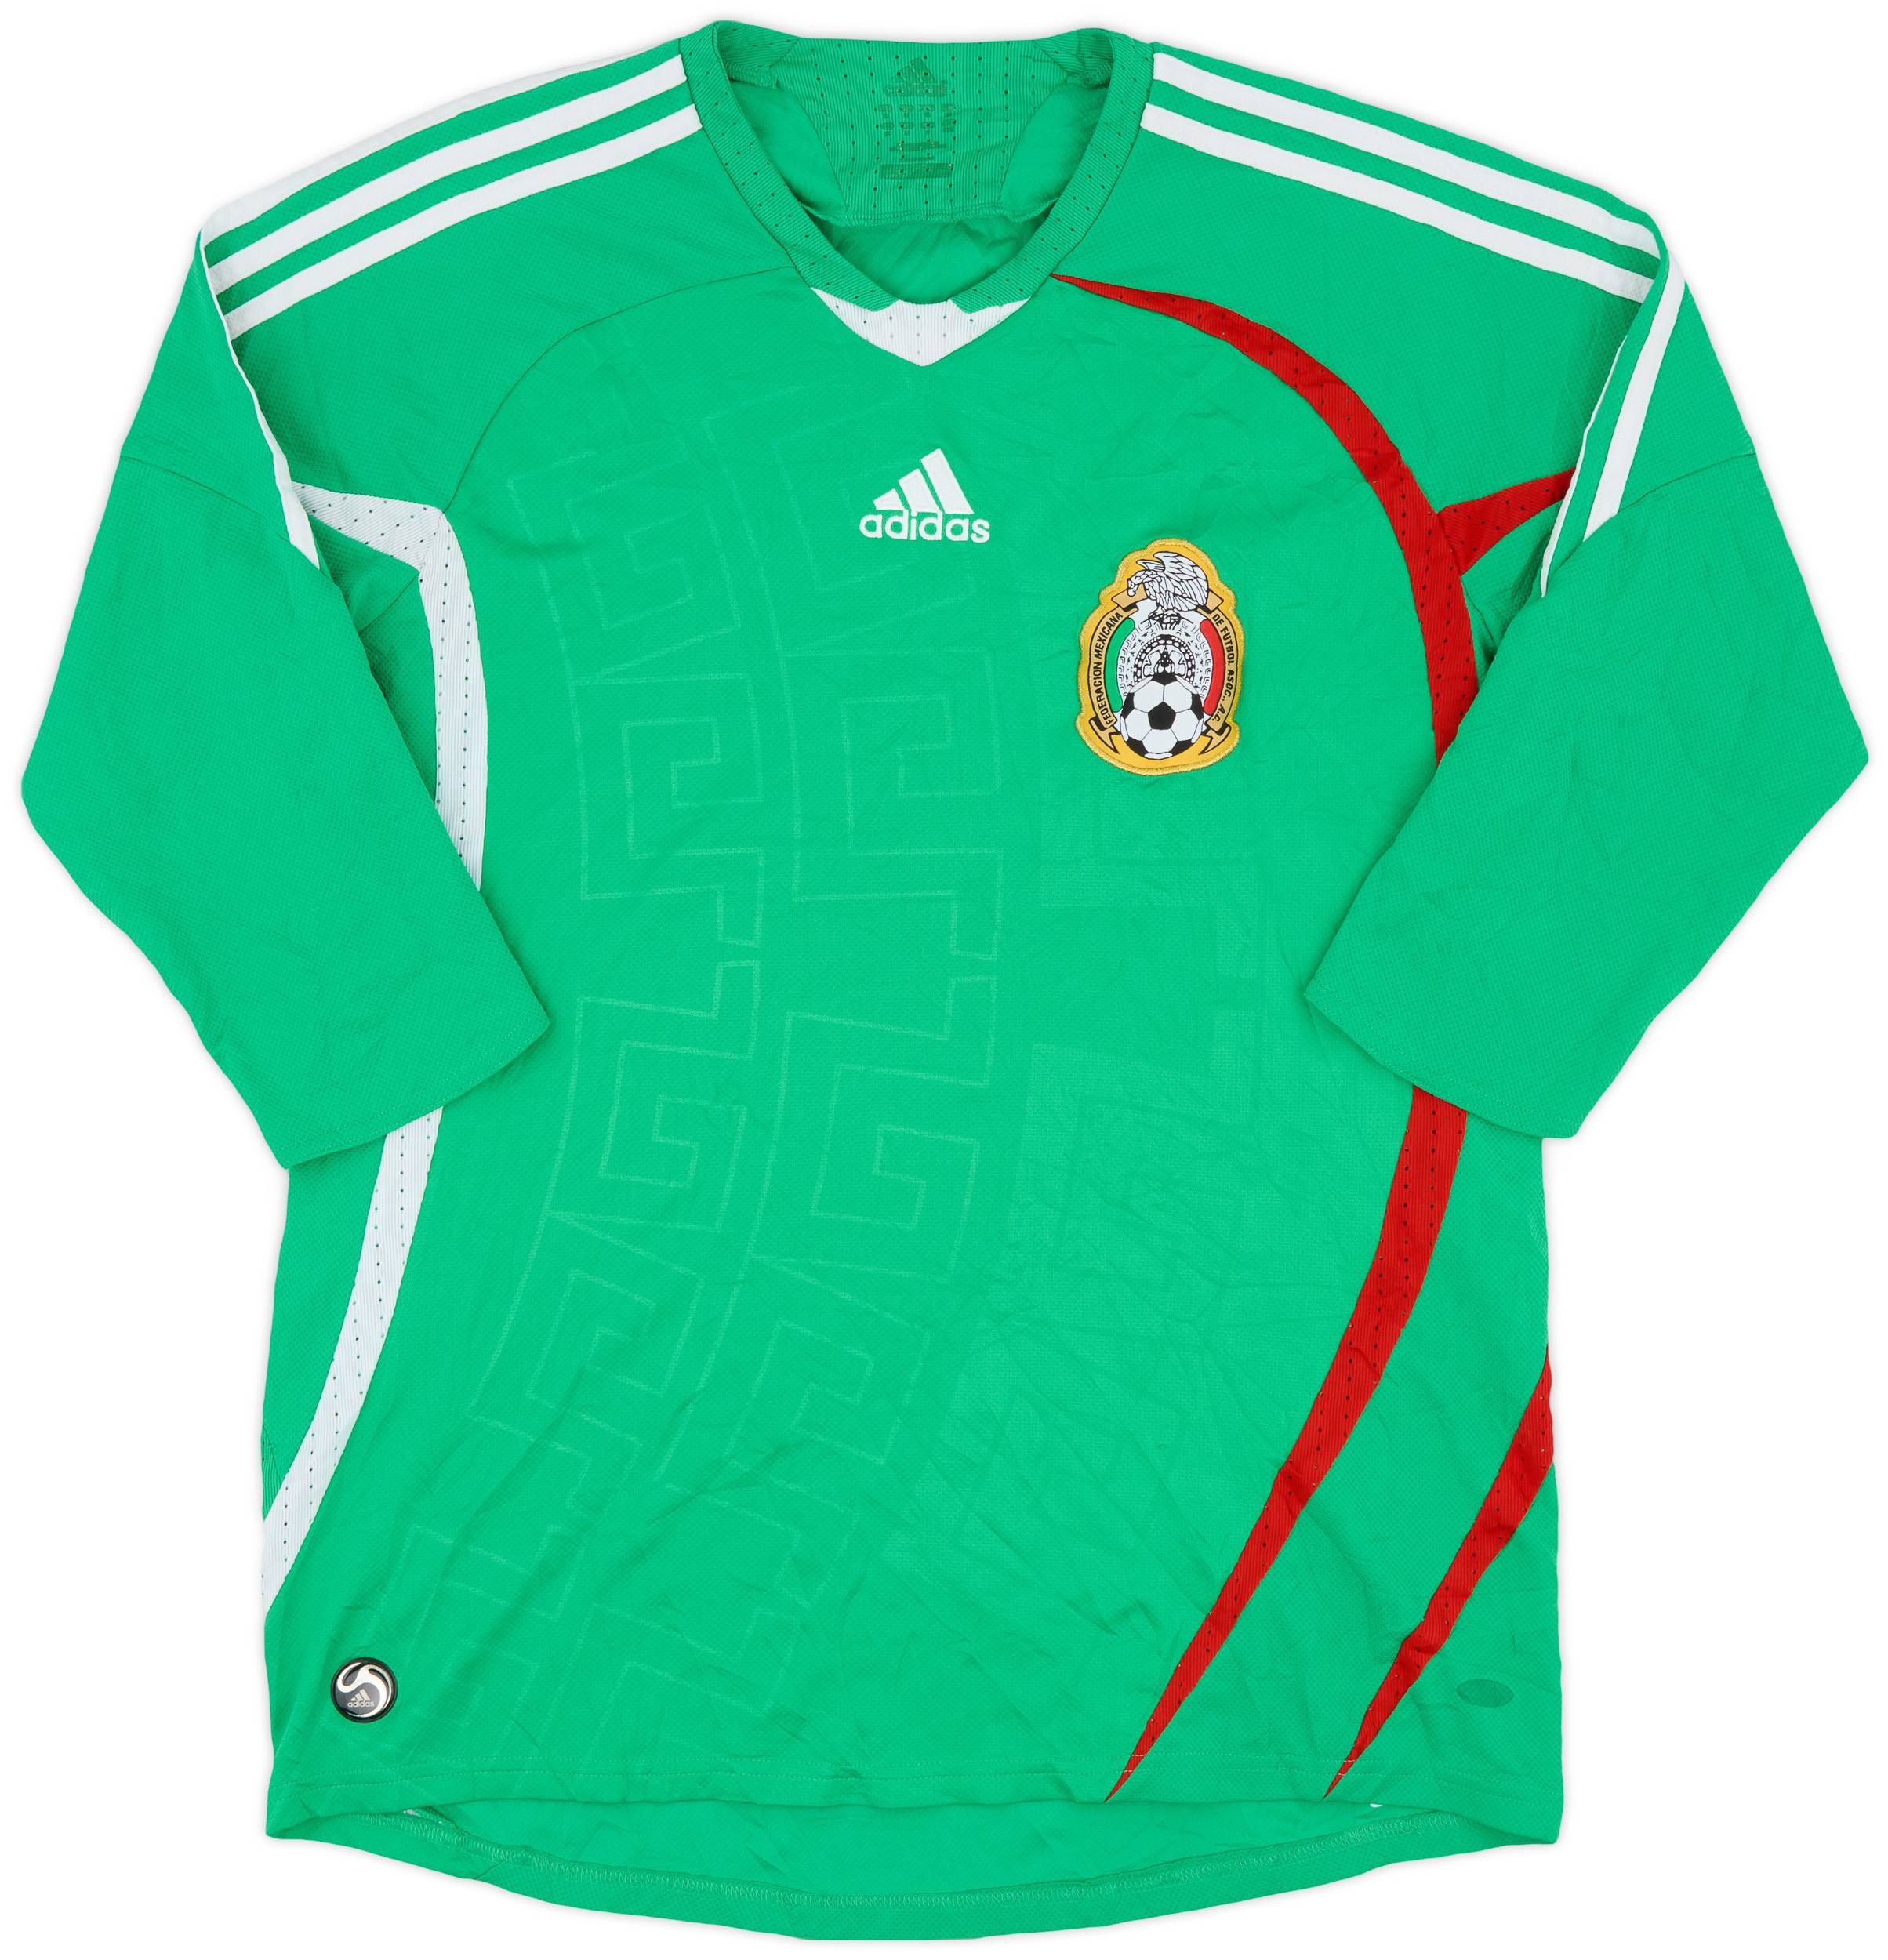 2008-09 Mexico Home Shirt - 8/10 - (M)